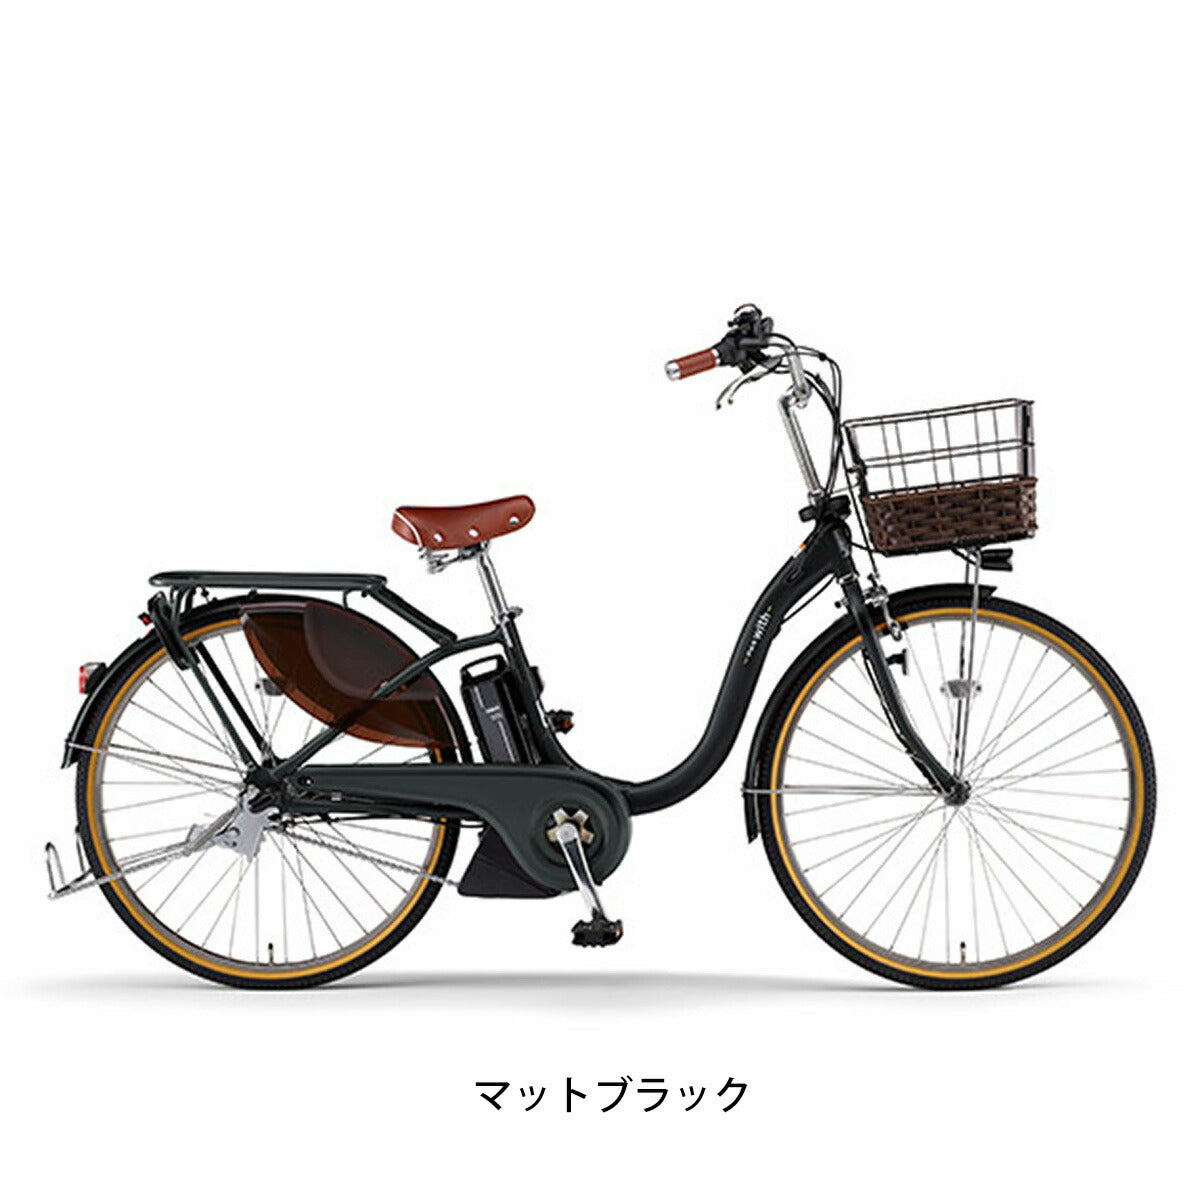 最低価格の 三輪車 【無料配送限定あり】電動自転車 ヤマハ バッテリー 